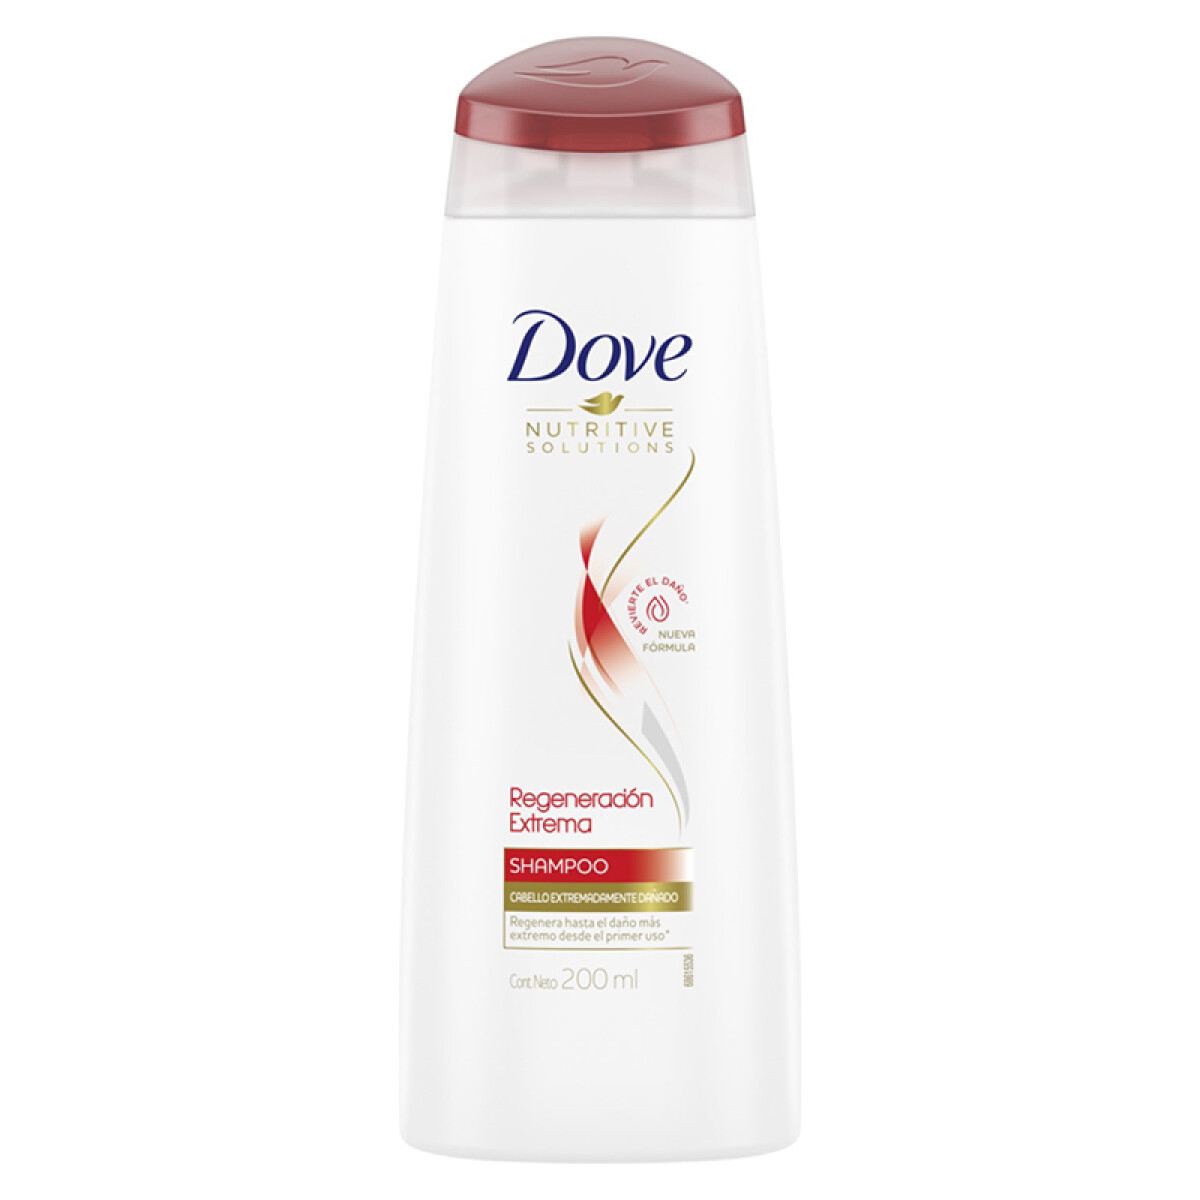 Dove shampoo - Regeneración extrema 200 ml 